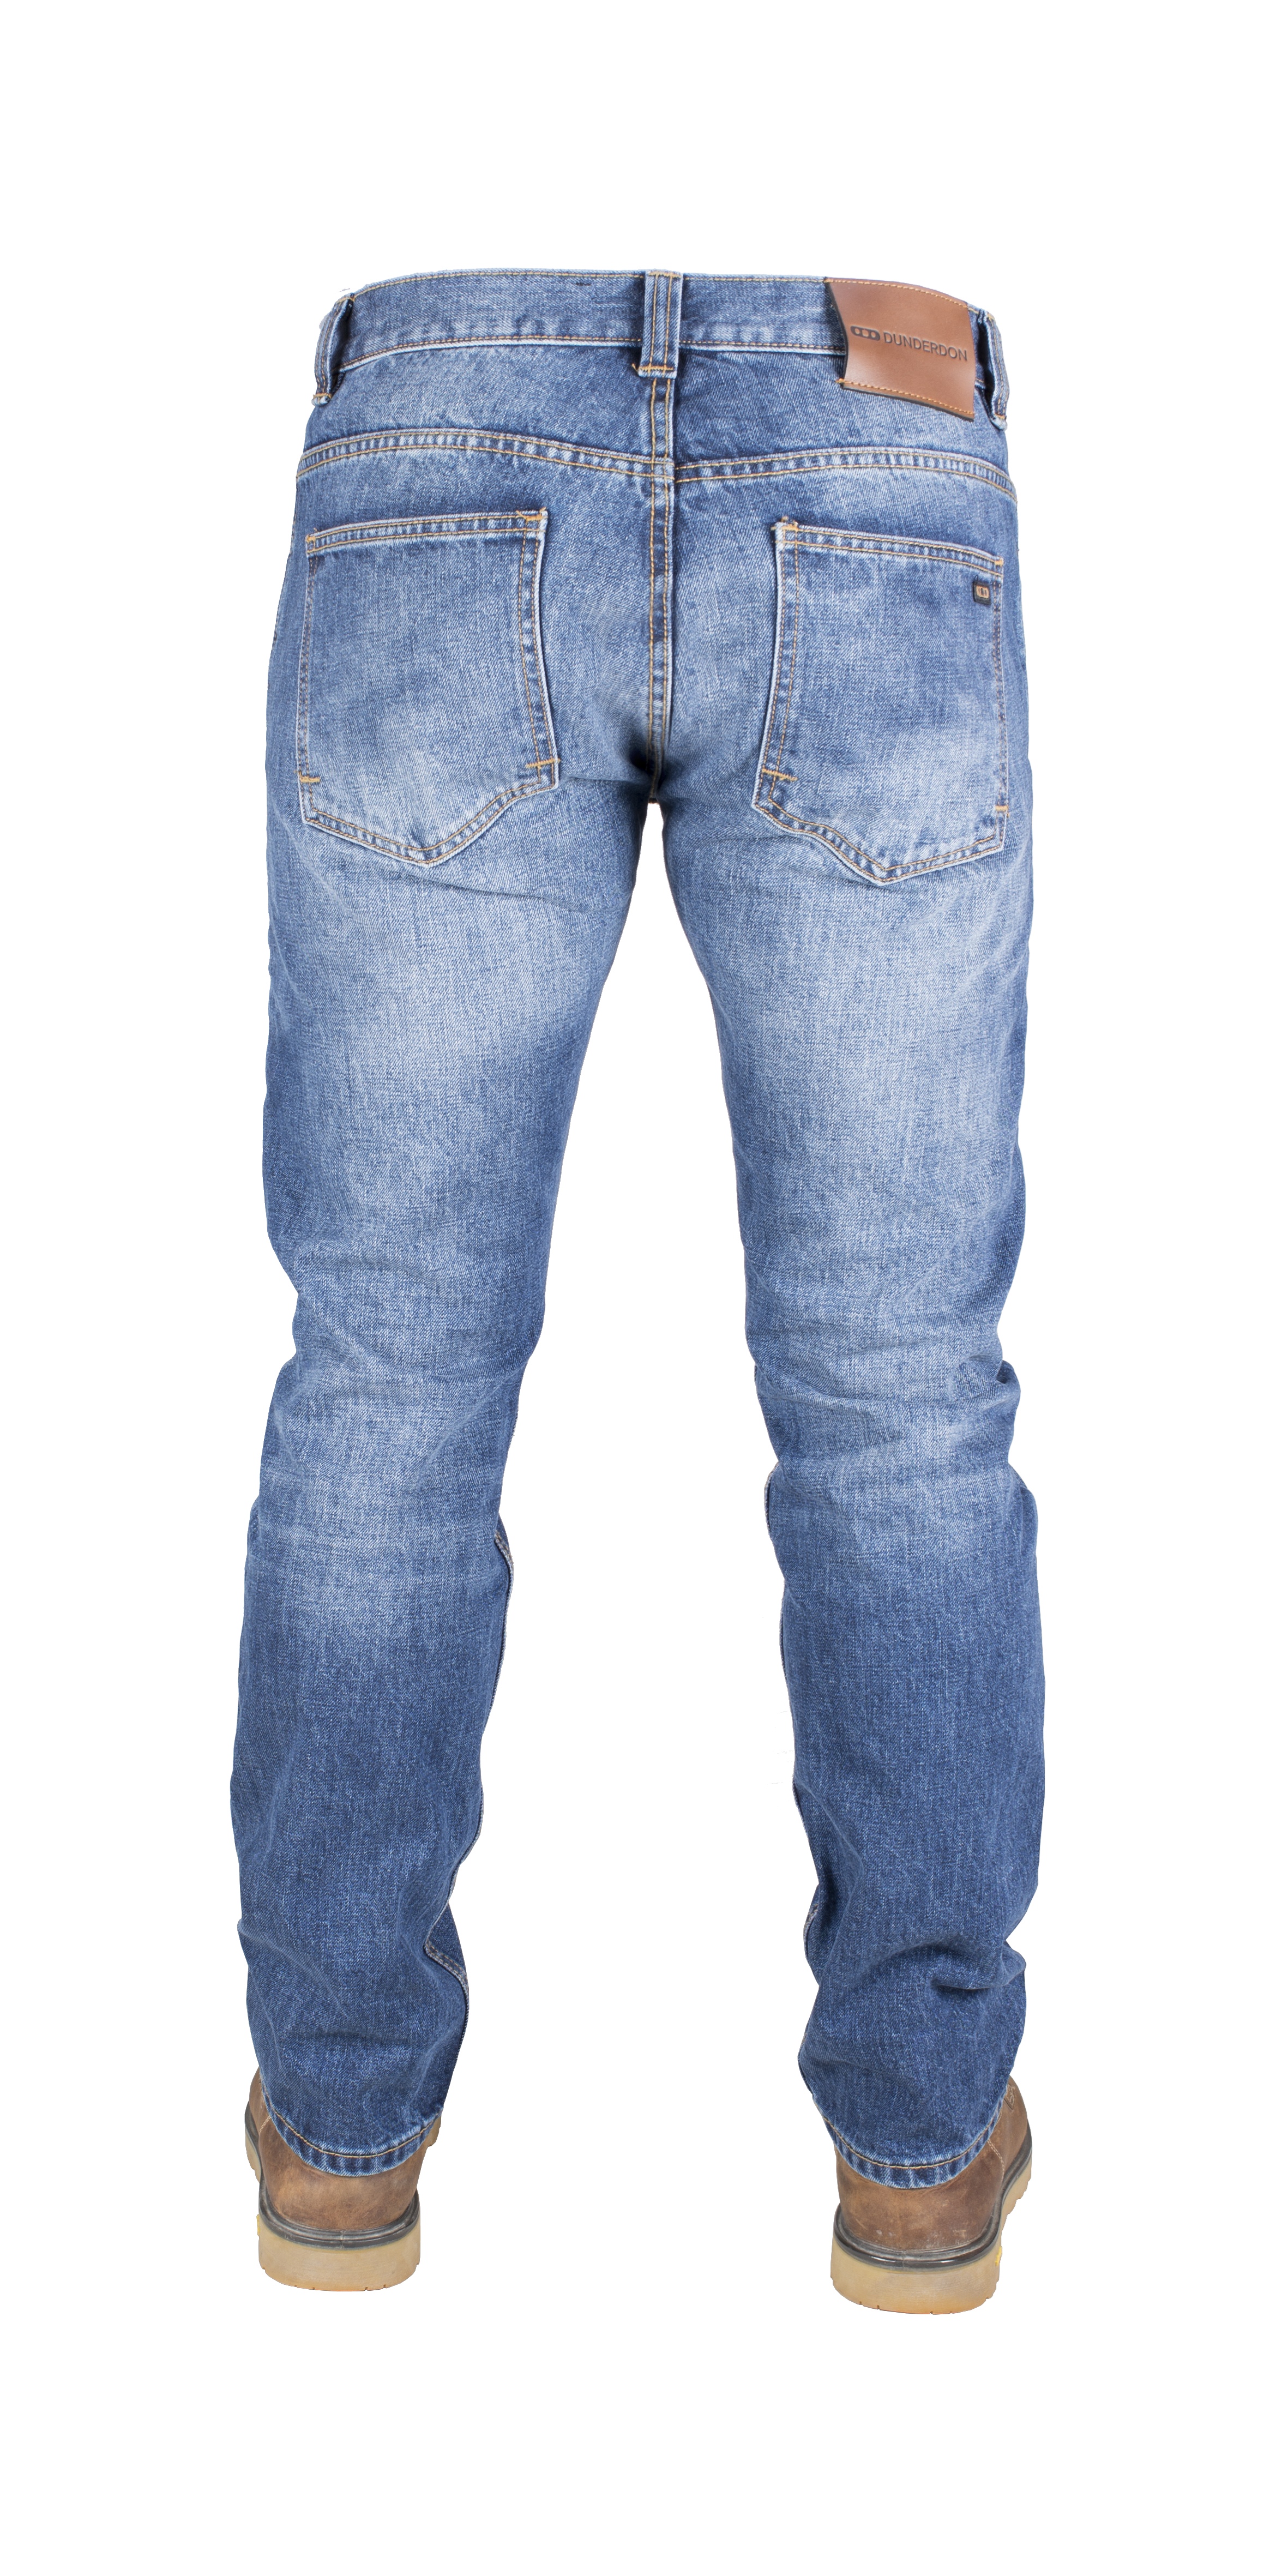 DW105002 Dunderdon Five- Pocket Jeans P50 -AUSVERKAUF- (Noch verfügbare Menge, siehe Pulldown)